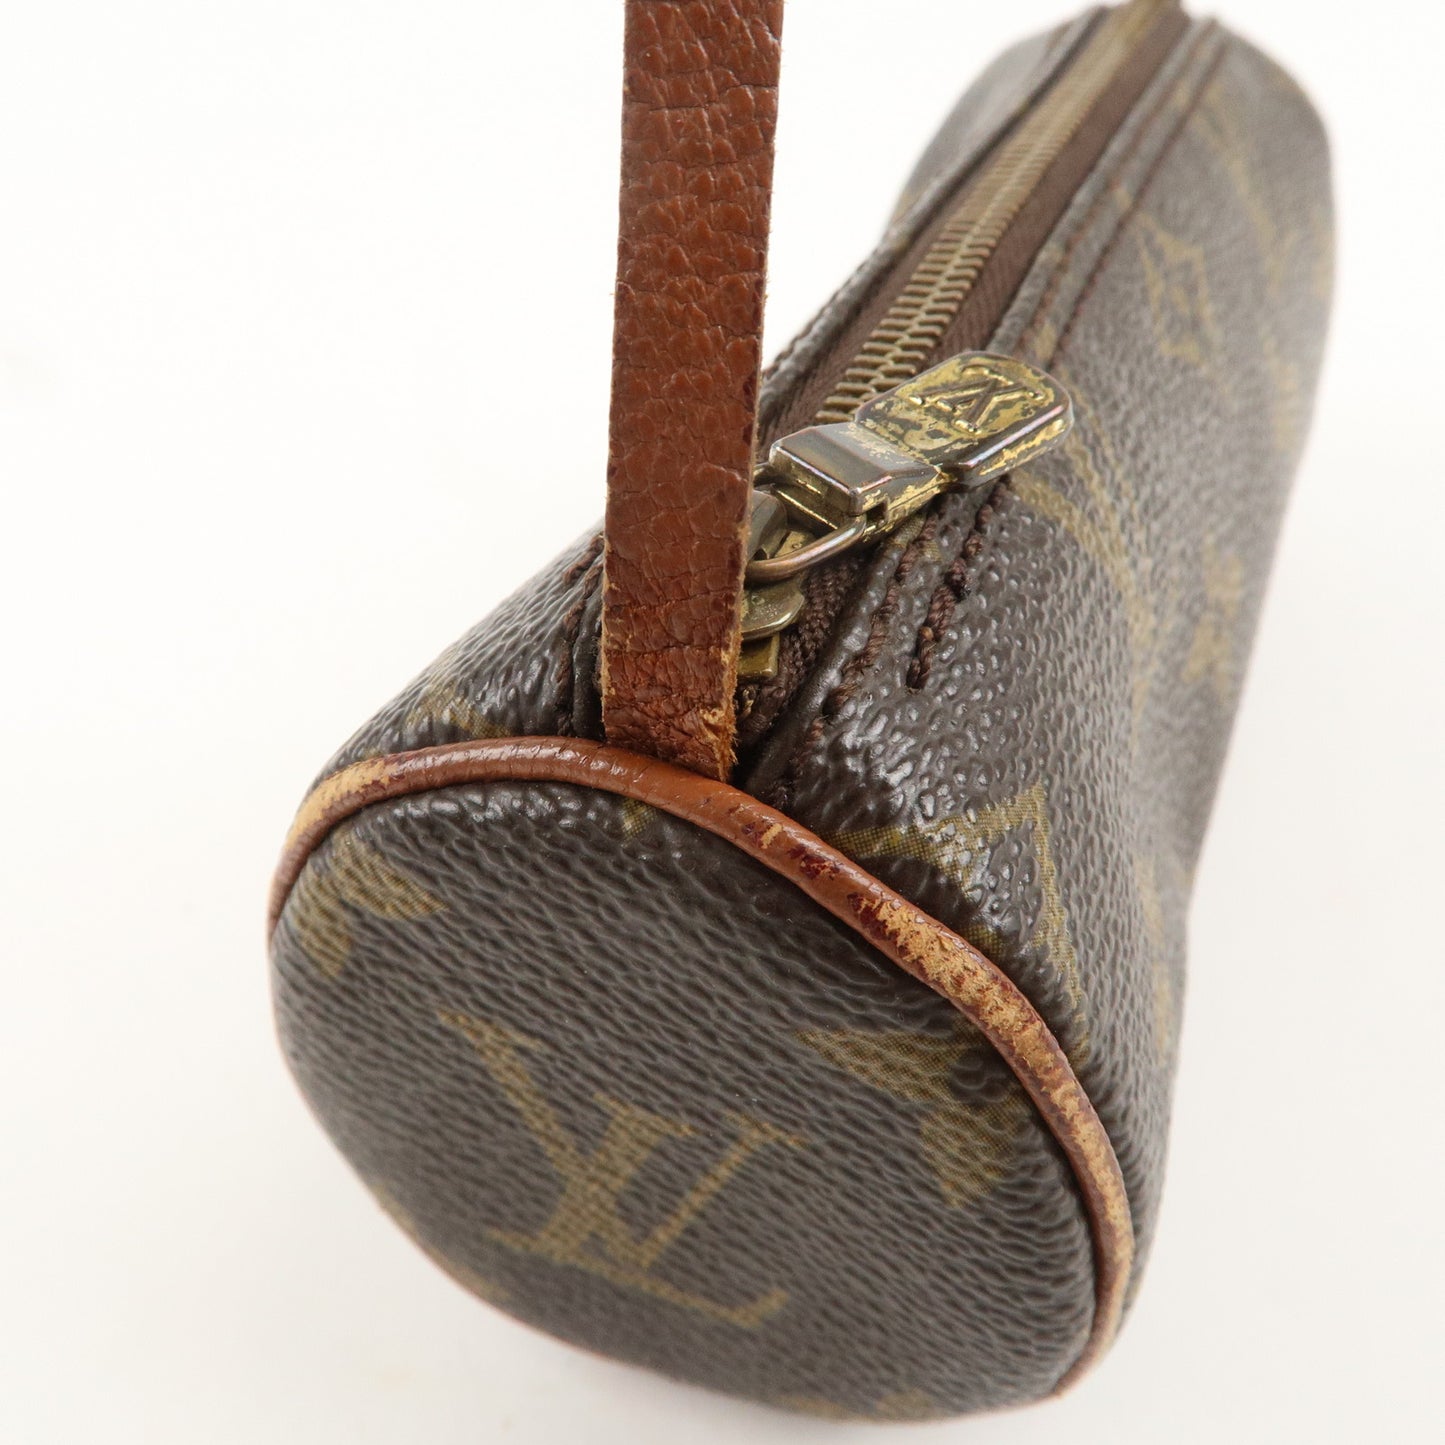 Louis Vuitton Set of 2 Monogram Pouch for Papillon Bag Brown